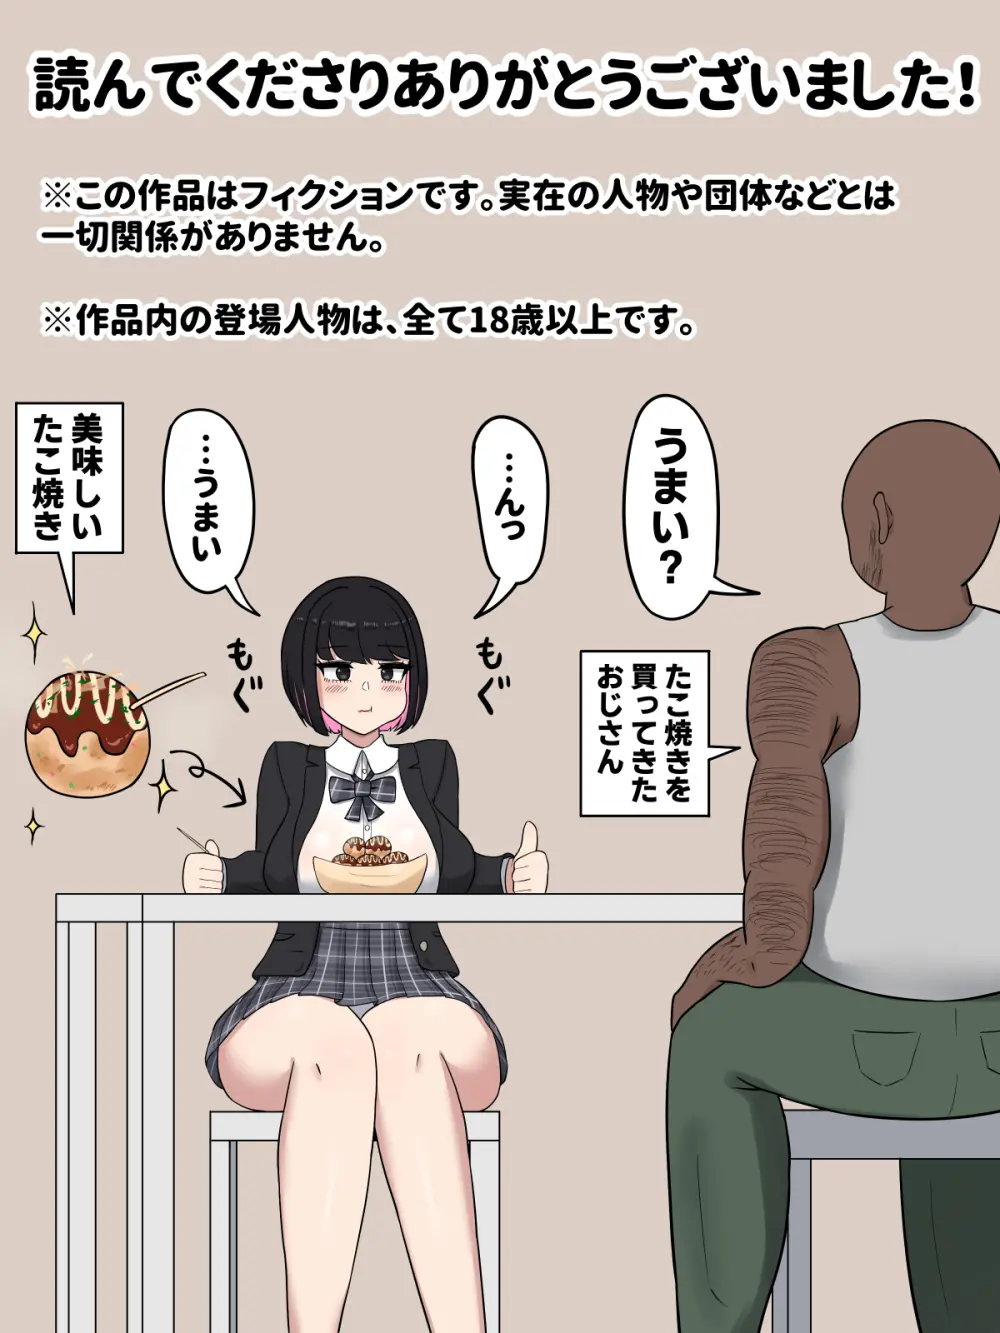 クール系JKリオちゃん〜粗チンとデカチンの反応の違い〜 - page22